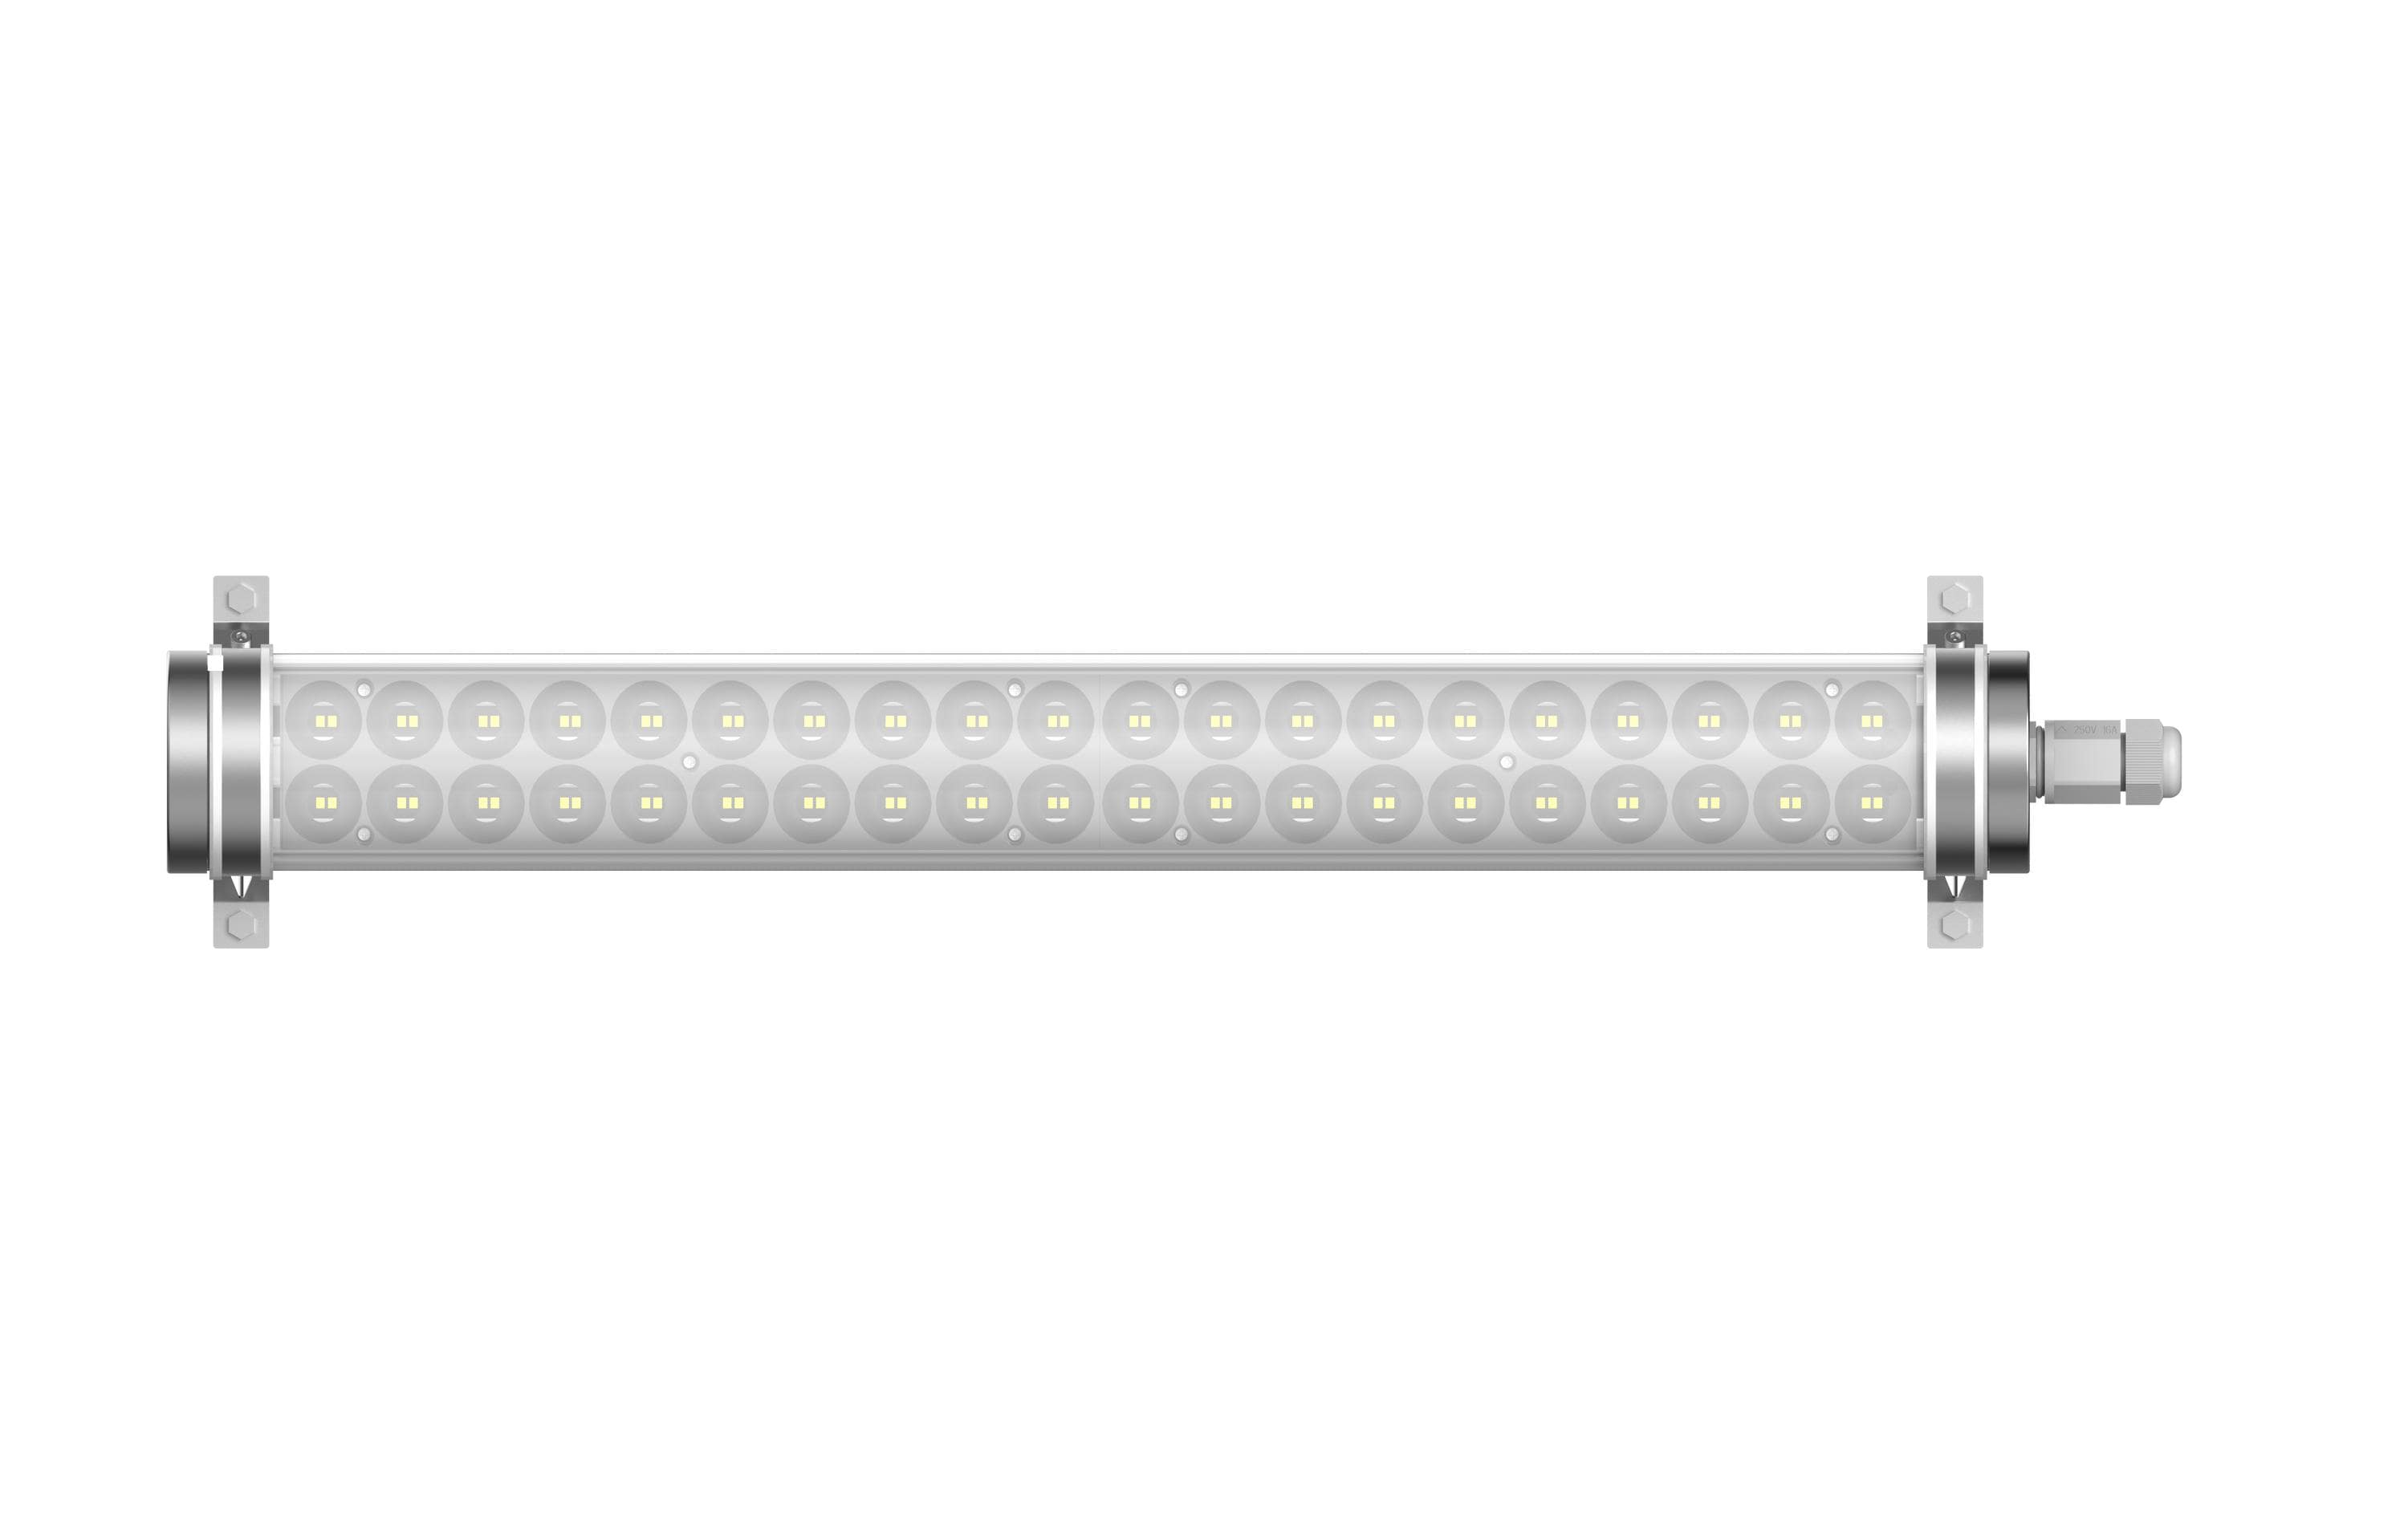 Elbro Feuchtraumleuchte LED Tubular, 20W, 2800 lm, 5000K